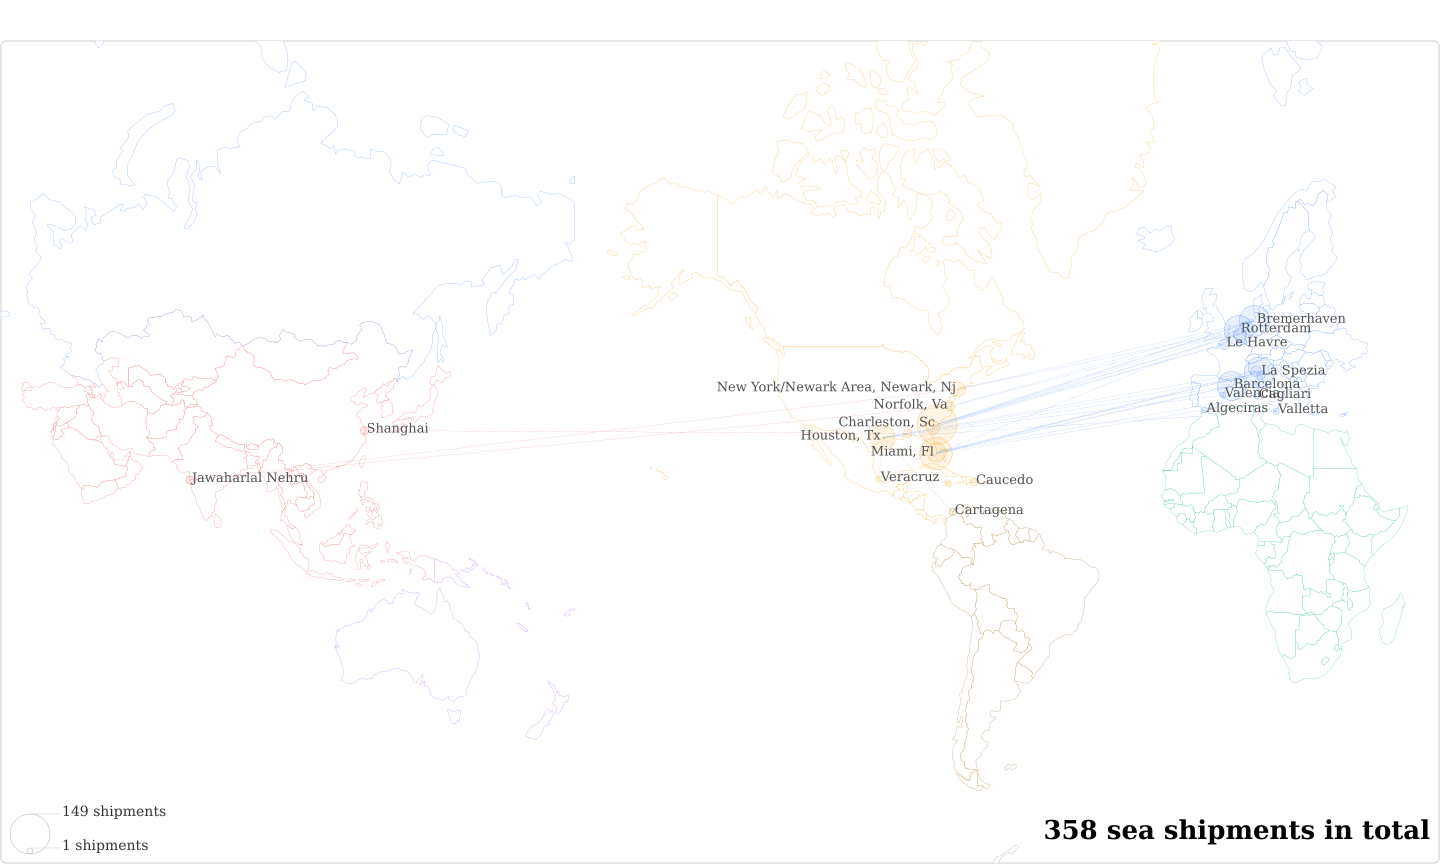 Merck S A De C V's Imports Per Country Map